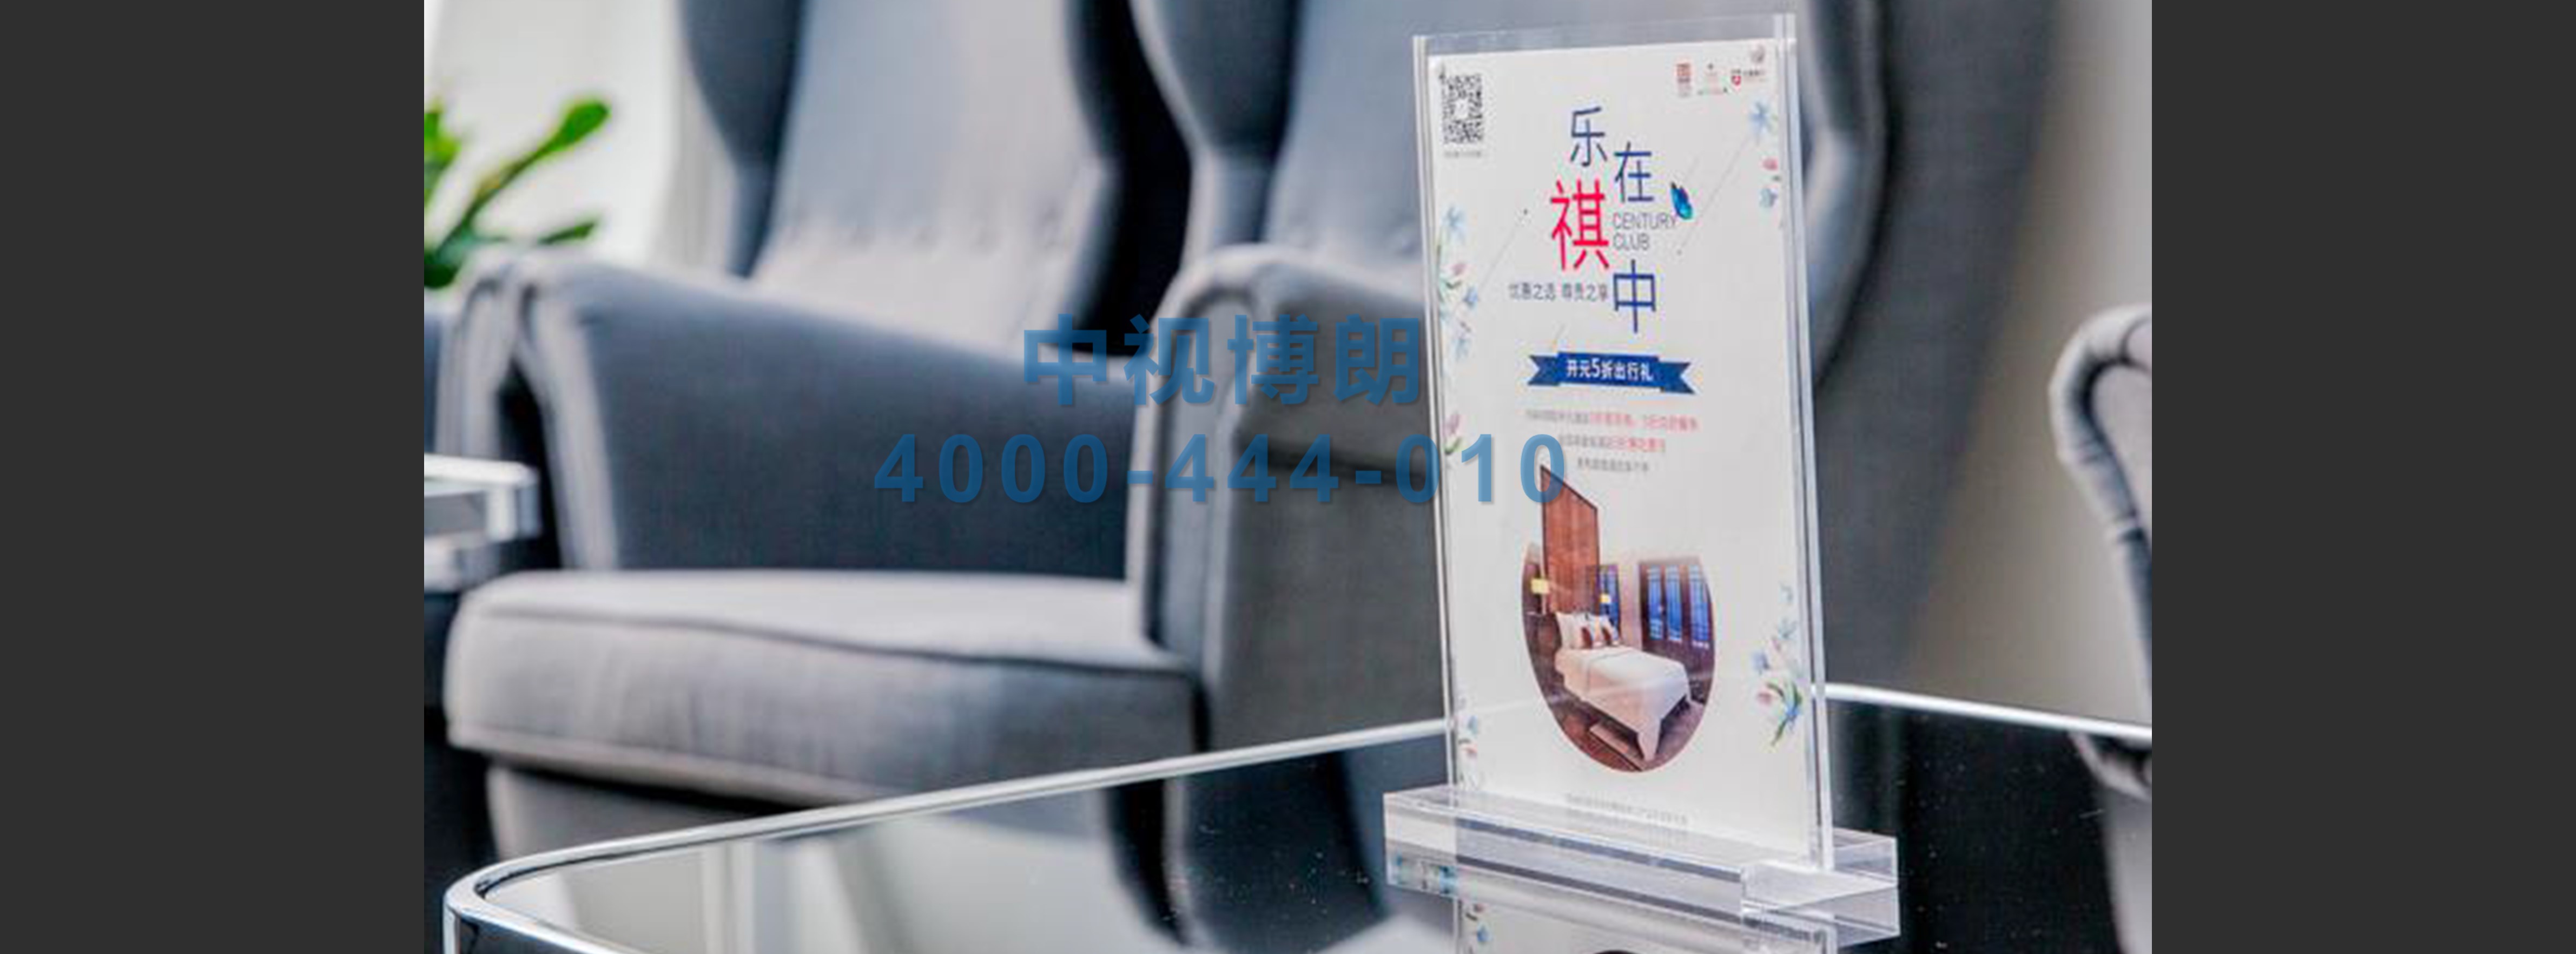 北京首都机场广告-全区域贵宾室桌牌